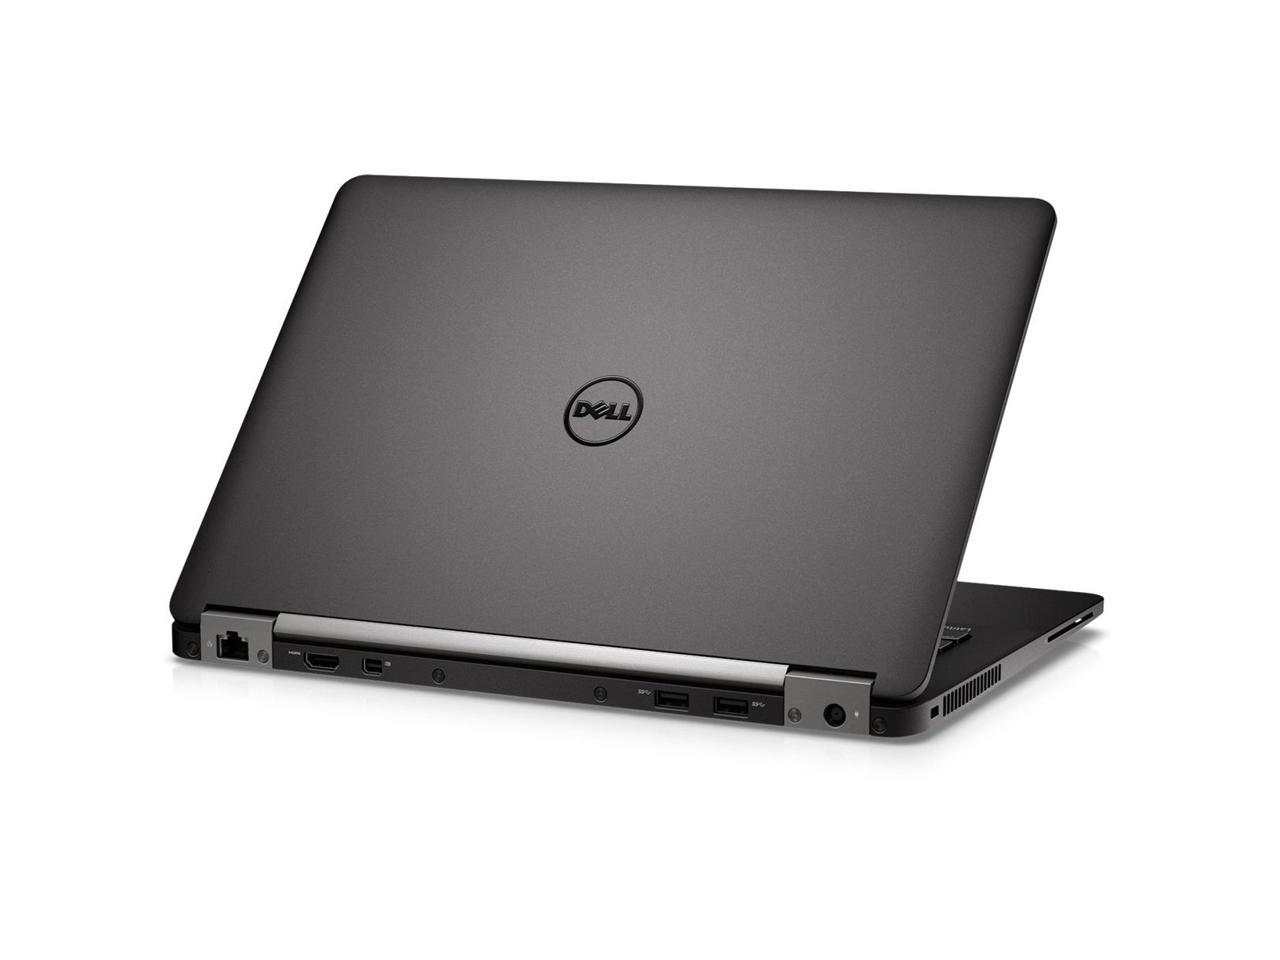 Dell Latitude E7270 12.5" Laptop, Intel Core i5 6300U 2.4Ghz, 8GB DDR4, 256GB M.2 SSD, HDMI, Webcam, Windows 10